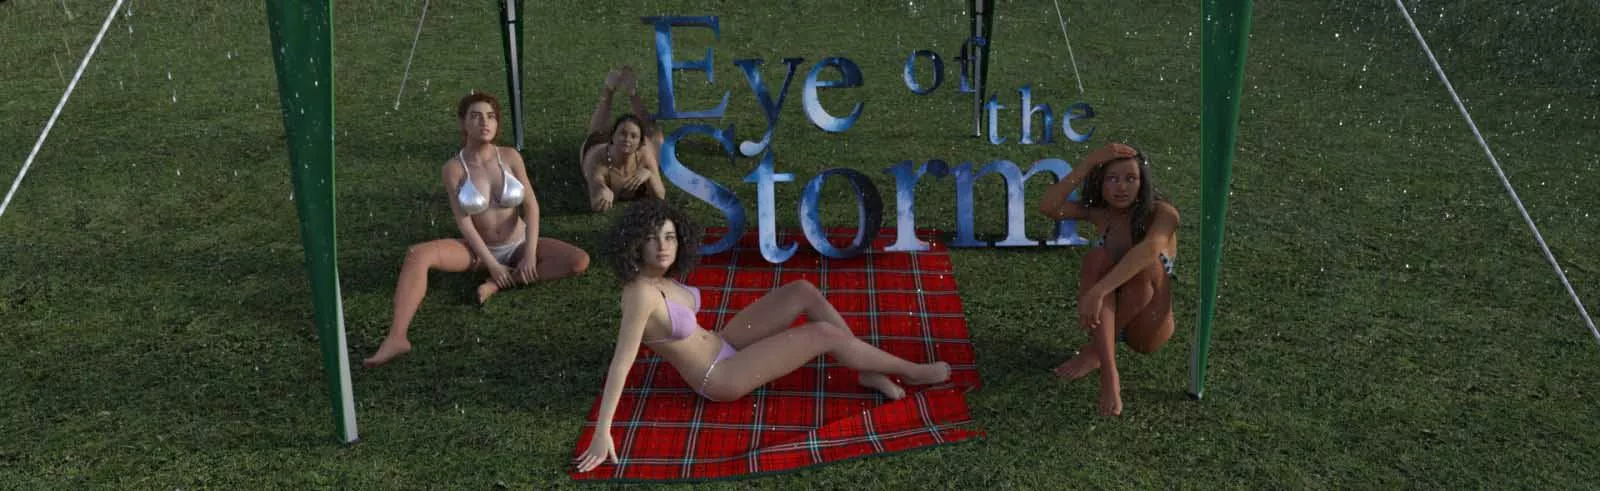 Eye of the Storm 3d seksspel, 3d spel voor volwassenen, spel xxx